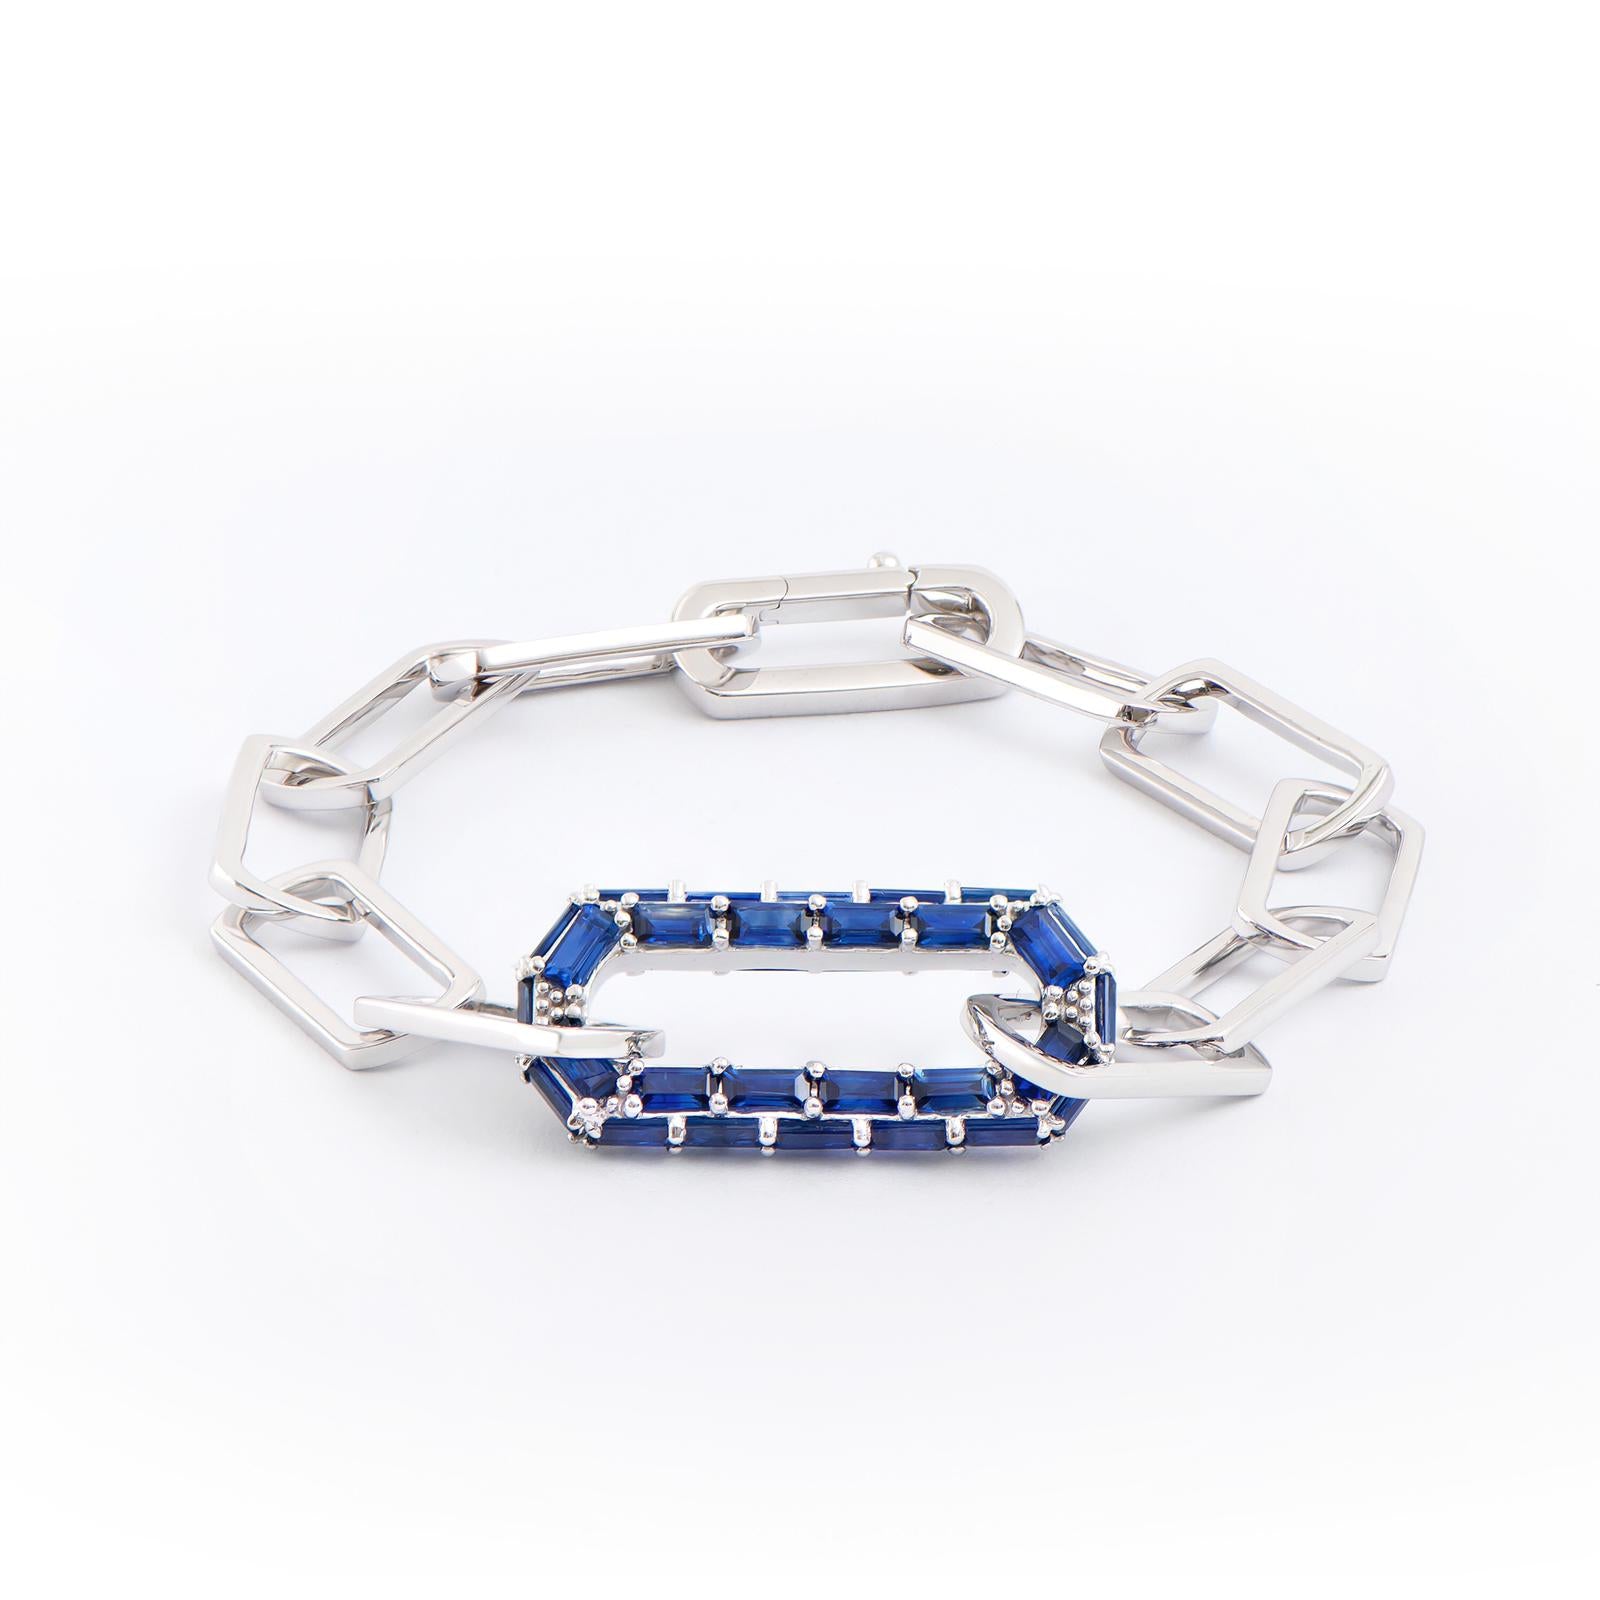 Louis Vuitton Engraved Monogram Chain Bracelet